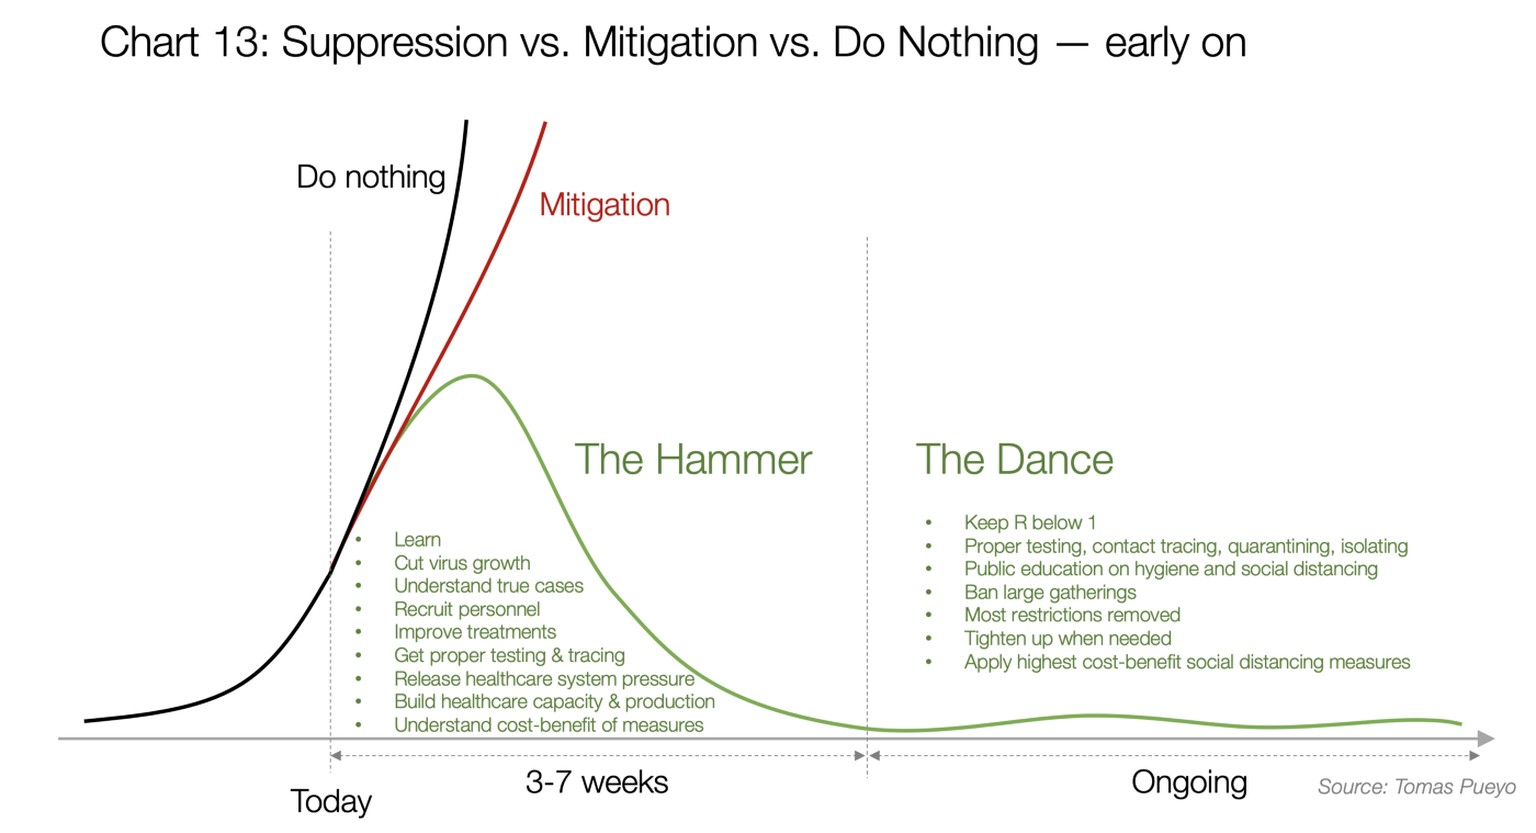 Pueyo vergleicht in diesem Diagramm den Effekt der drei Strategien «Nichts tun» (schwarze Kurve), Mitigation (rote Kurve) und Suppression (grüne Kurve). Für die Phase des «Hammers» veranschlagt er eine Dauer von 3 bis 7 Wochen; der «Tanz» würde danach bis zur Herstellung eines Impfstoffs andauern.  